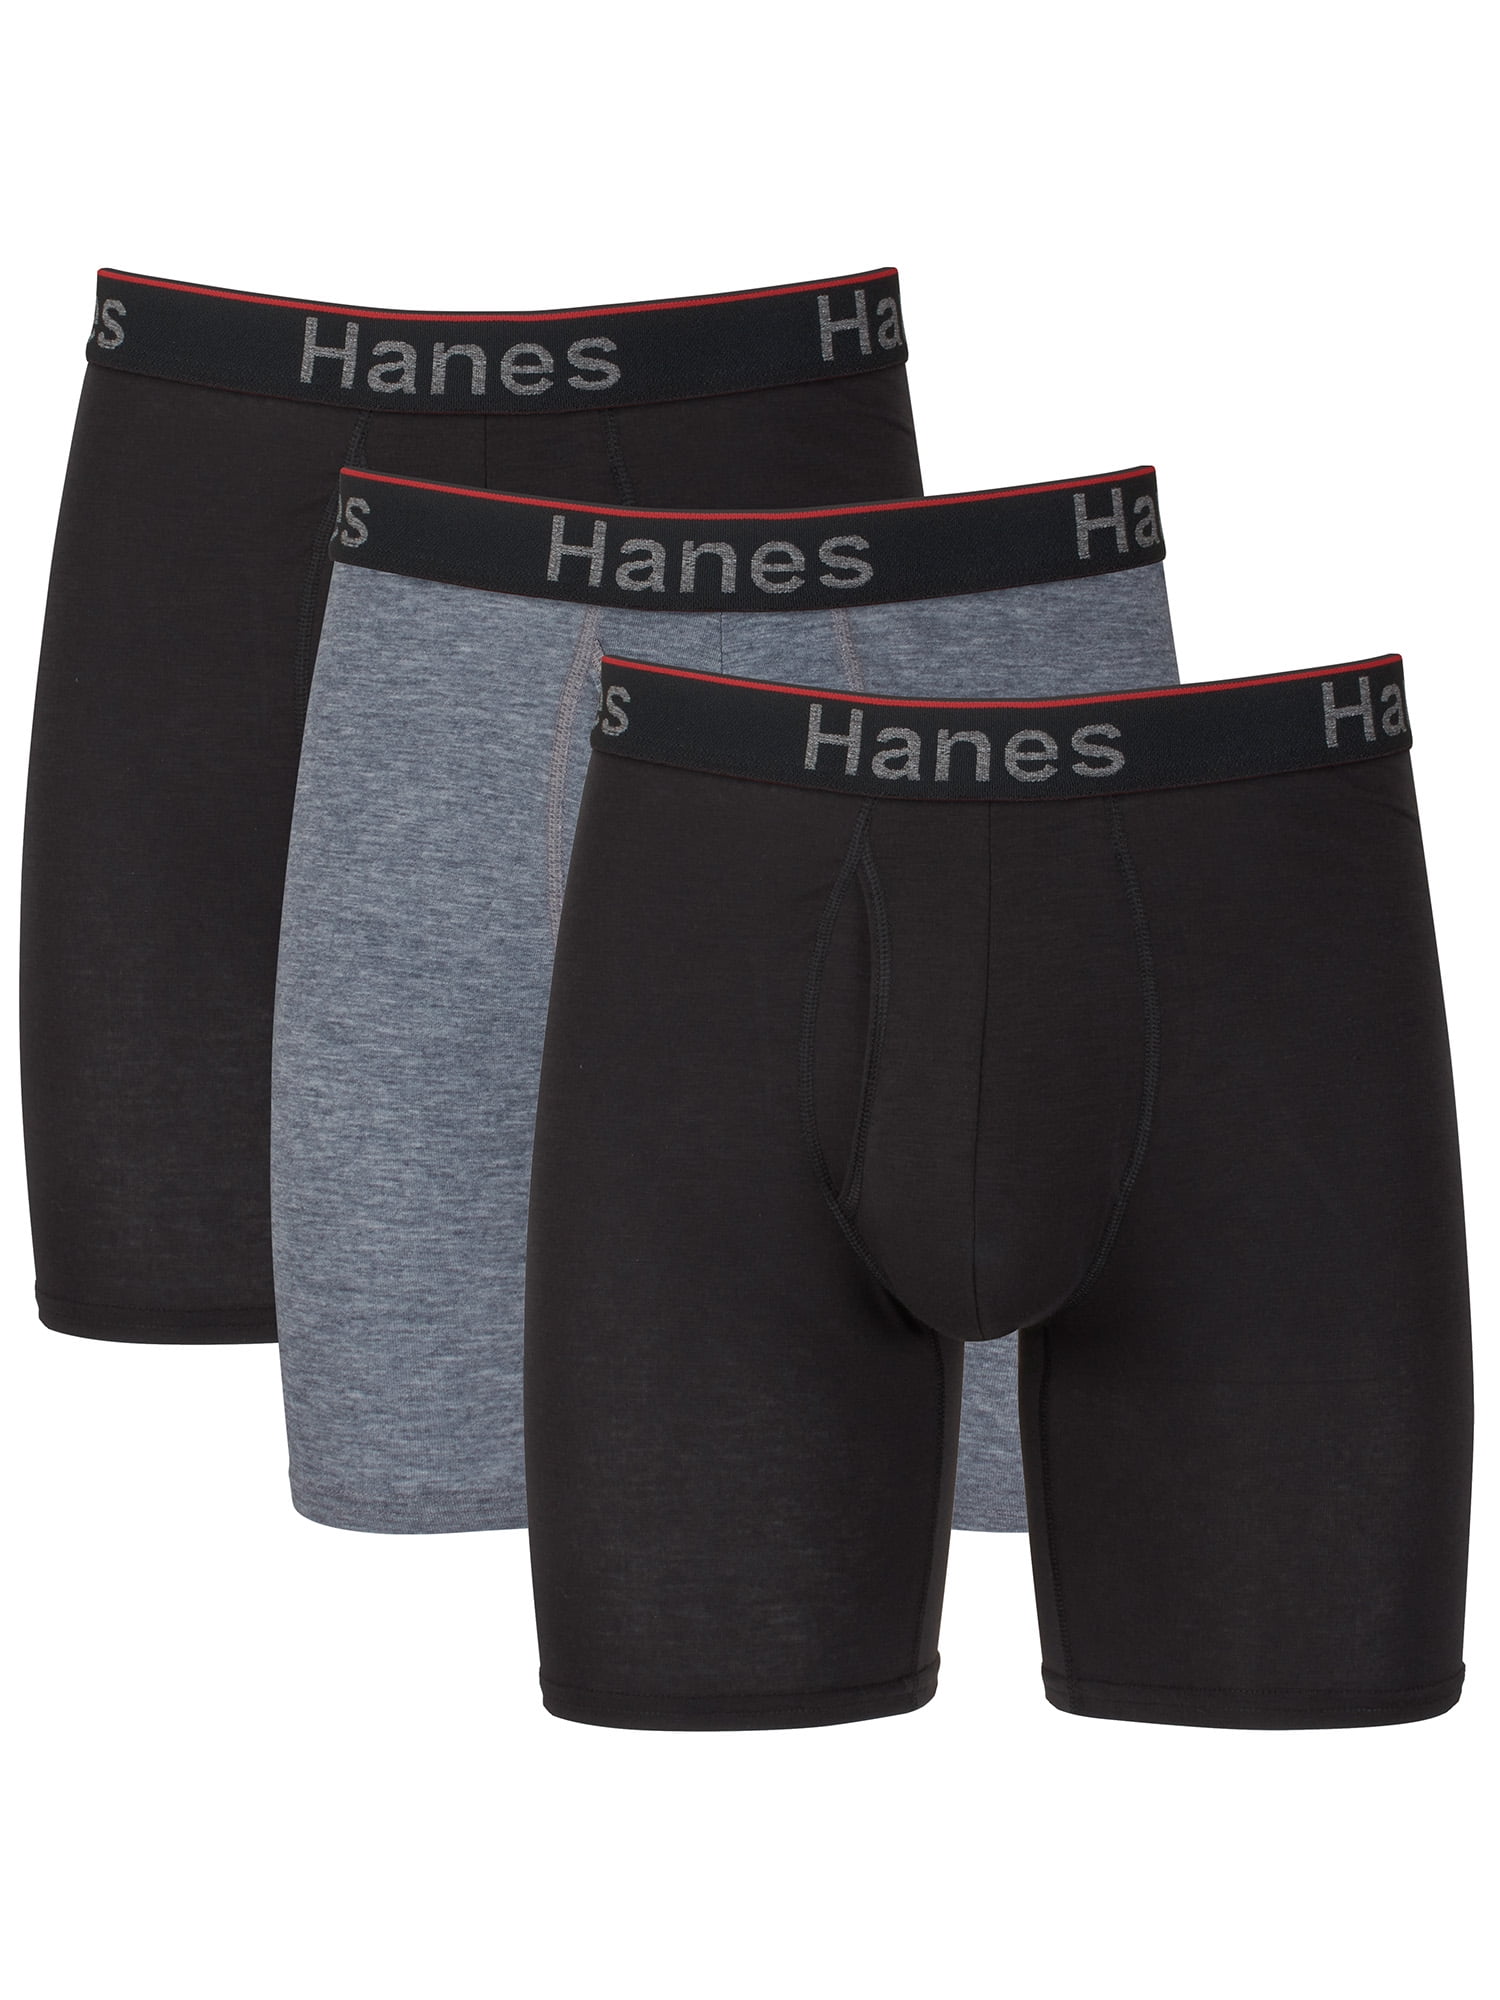 Hanes Men's Comfort Flex Fit Total Support Pouch Long Leg Boxer Briefs, 3  Pack